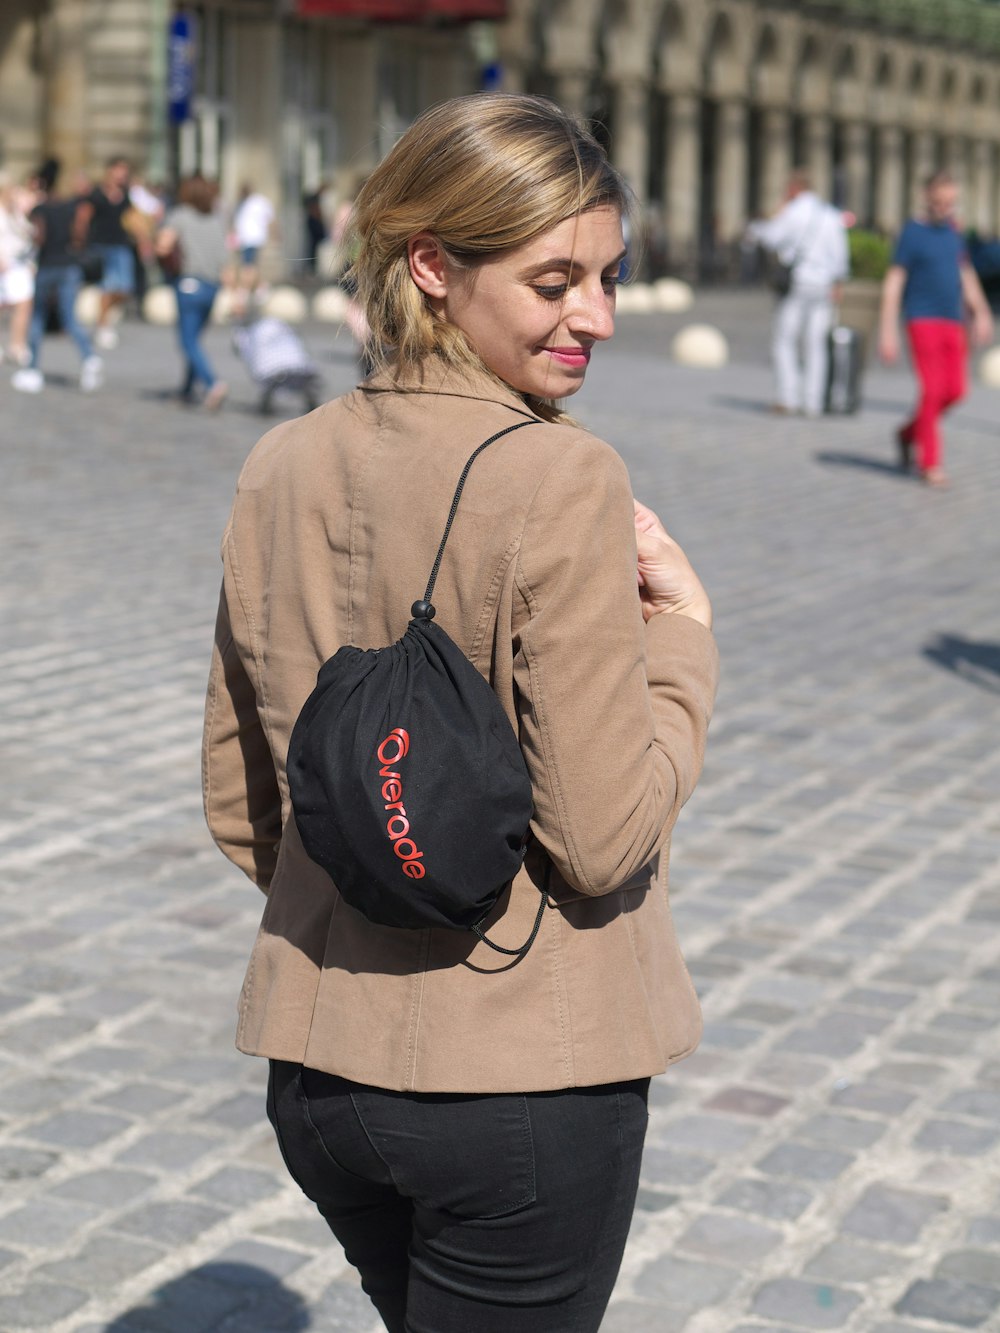 uma mulher andando por uma rua com uma mochila nas costas